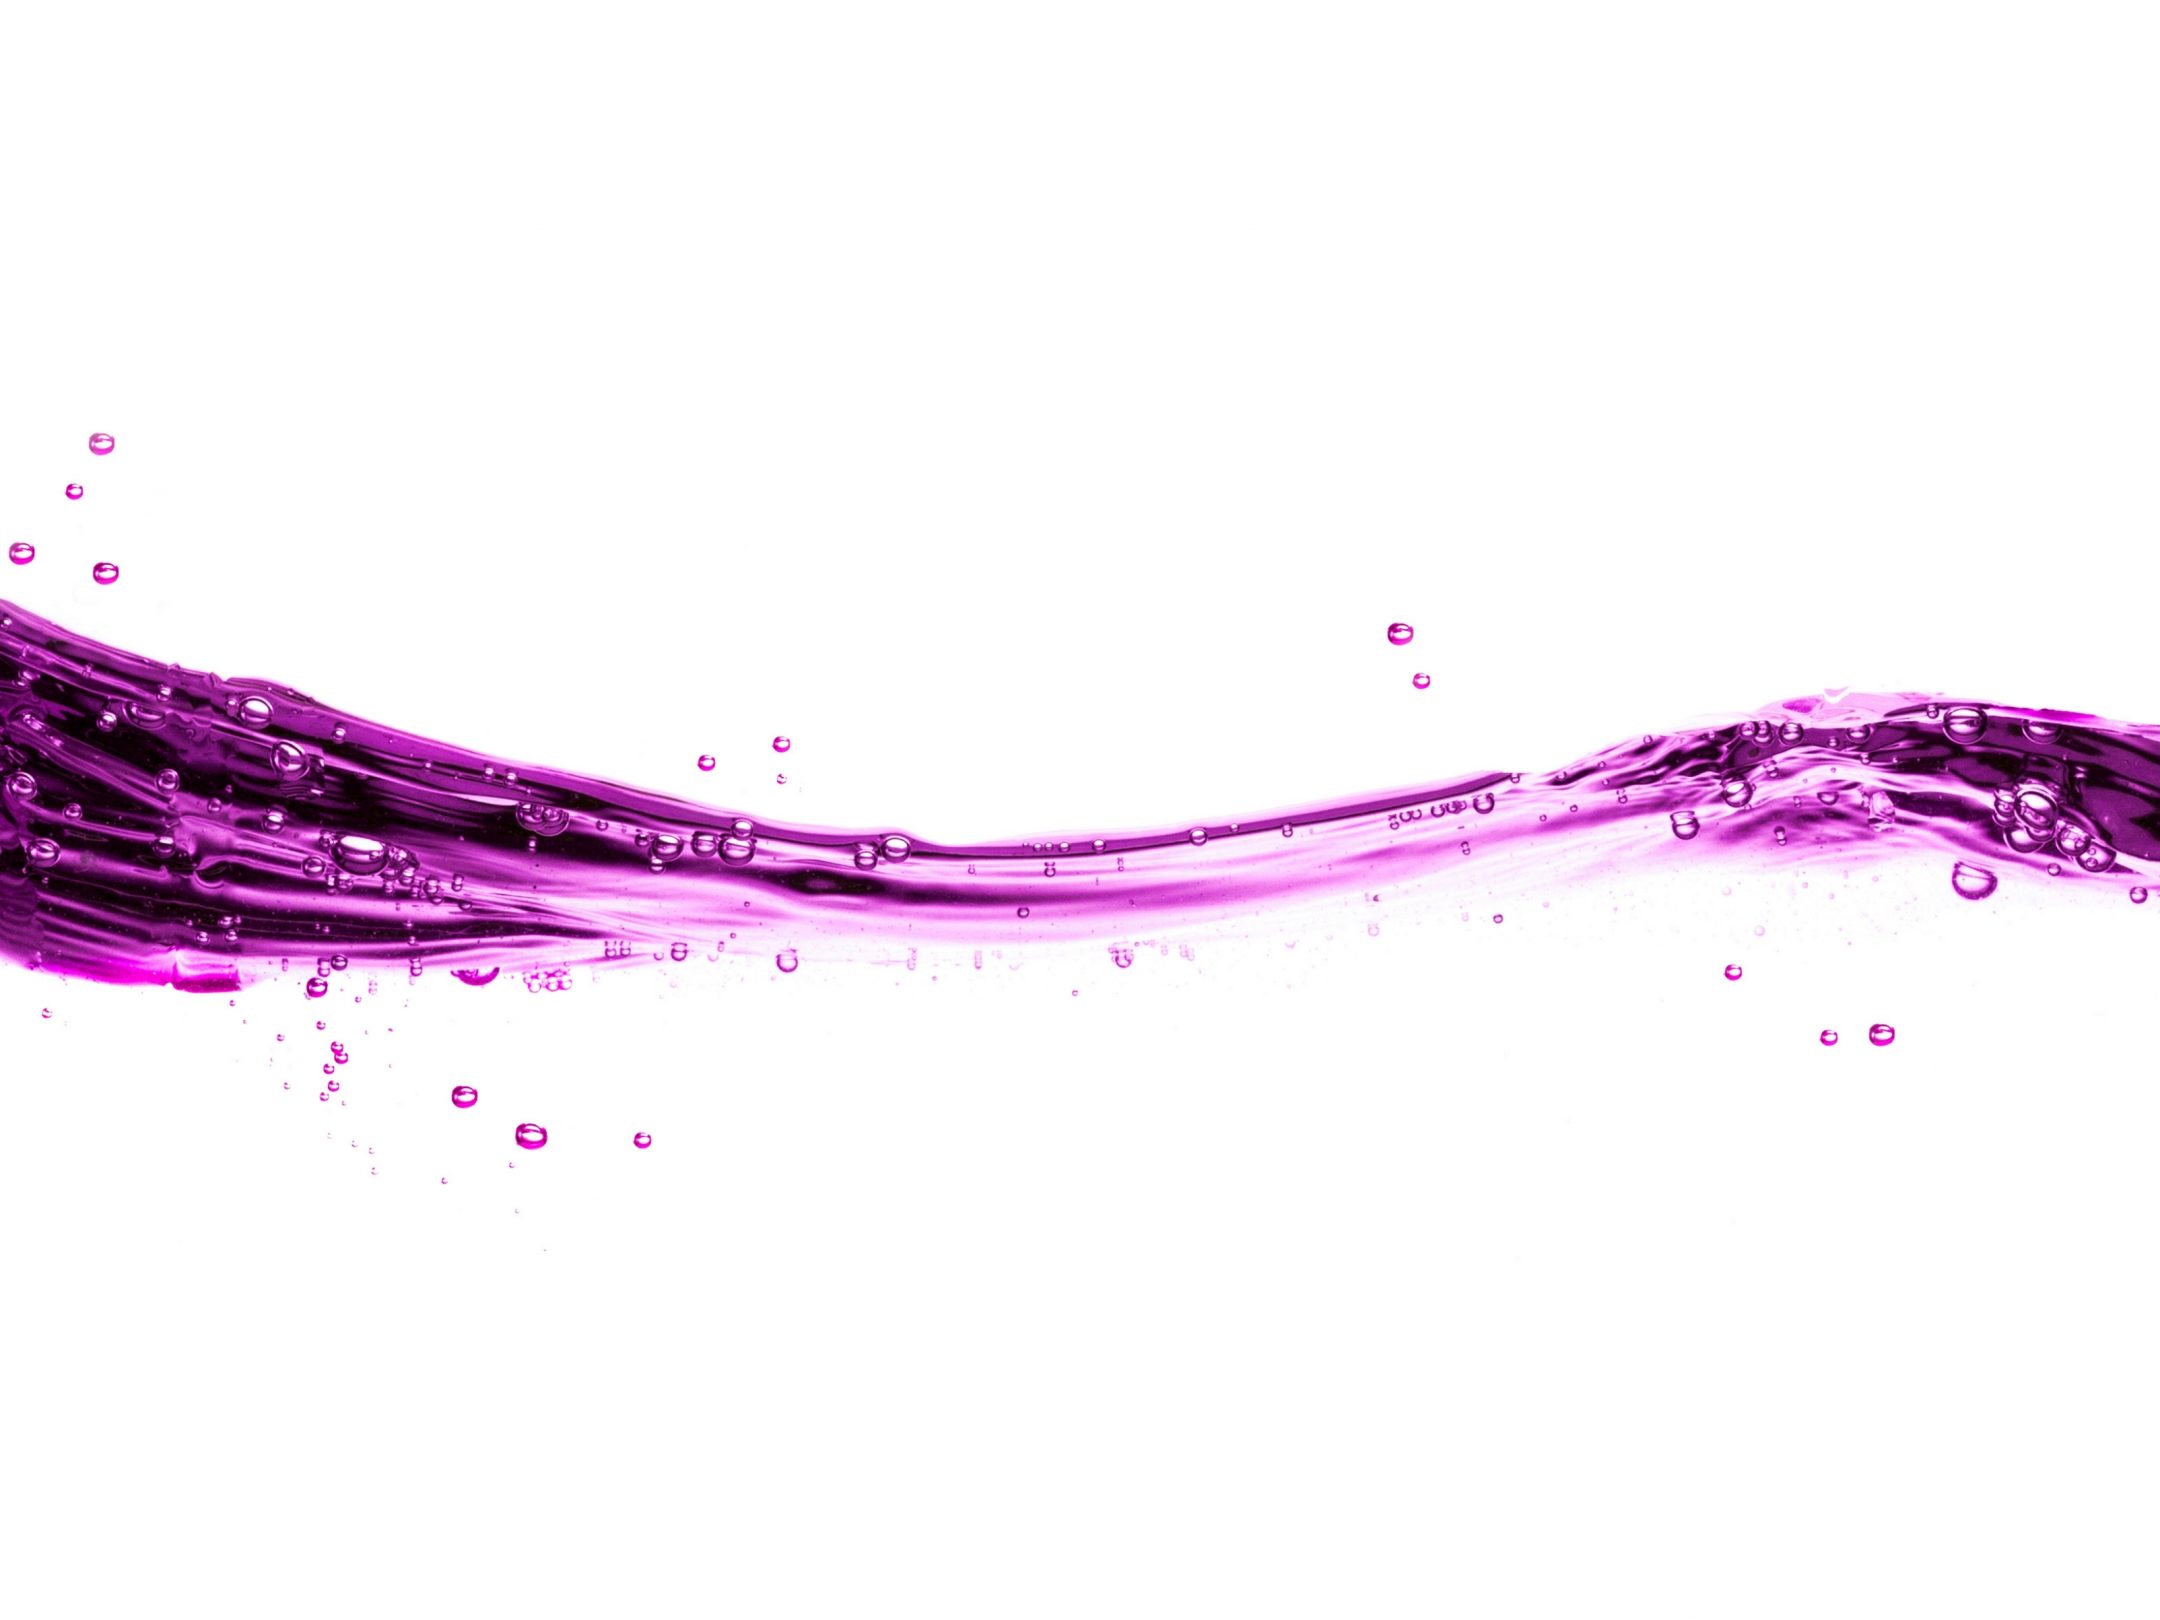 2160x1620 iPad wallpaper 4k Purple Water Splash White Background iPad Wallpaper 2160x1620 pixels resolution